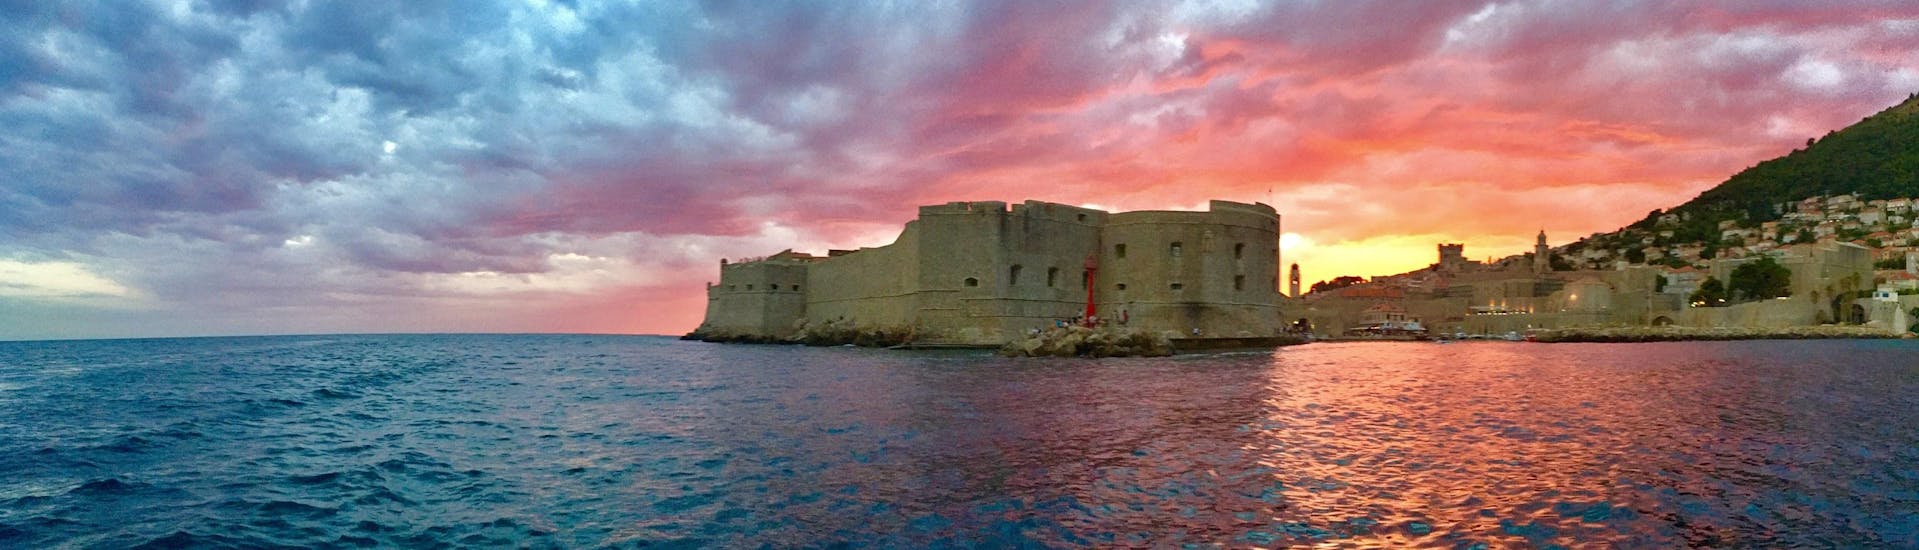 Gita privata in barca da Dubrovnik a Isole Elafiti  e bagno in mare.